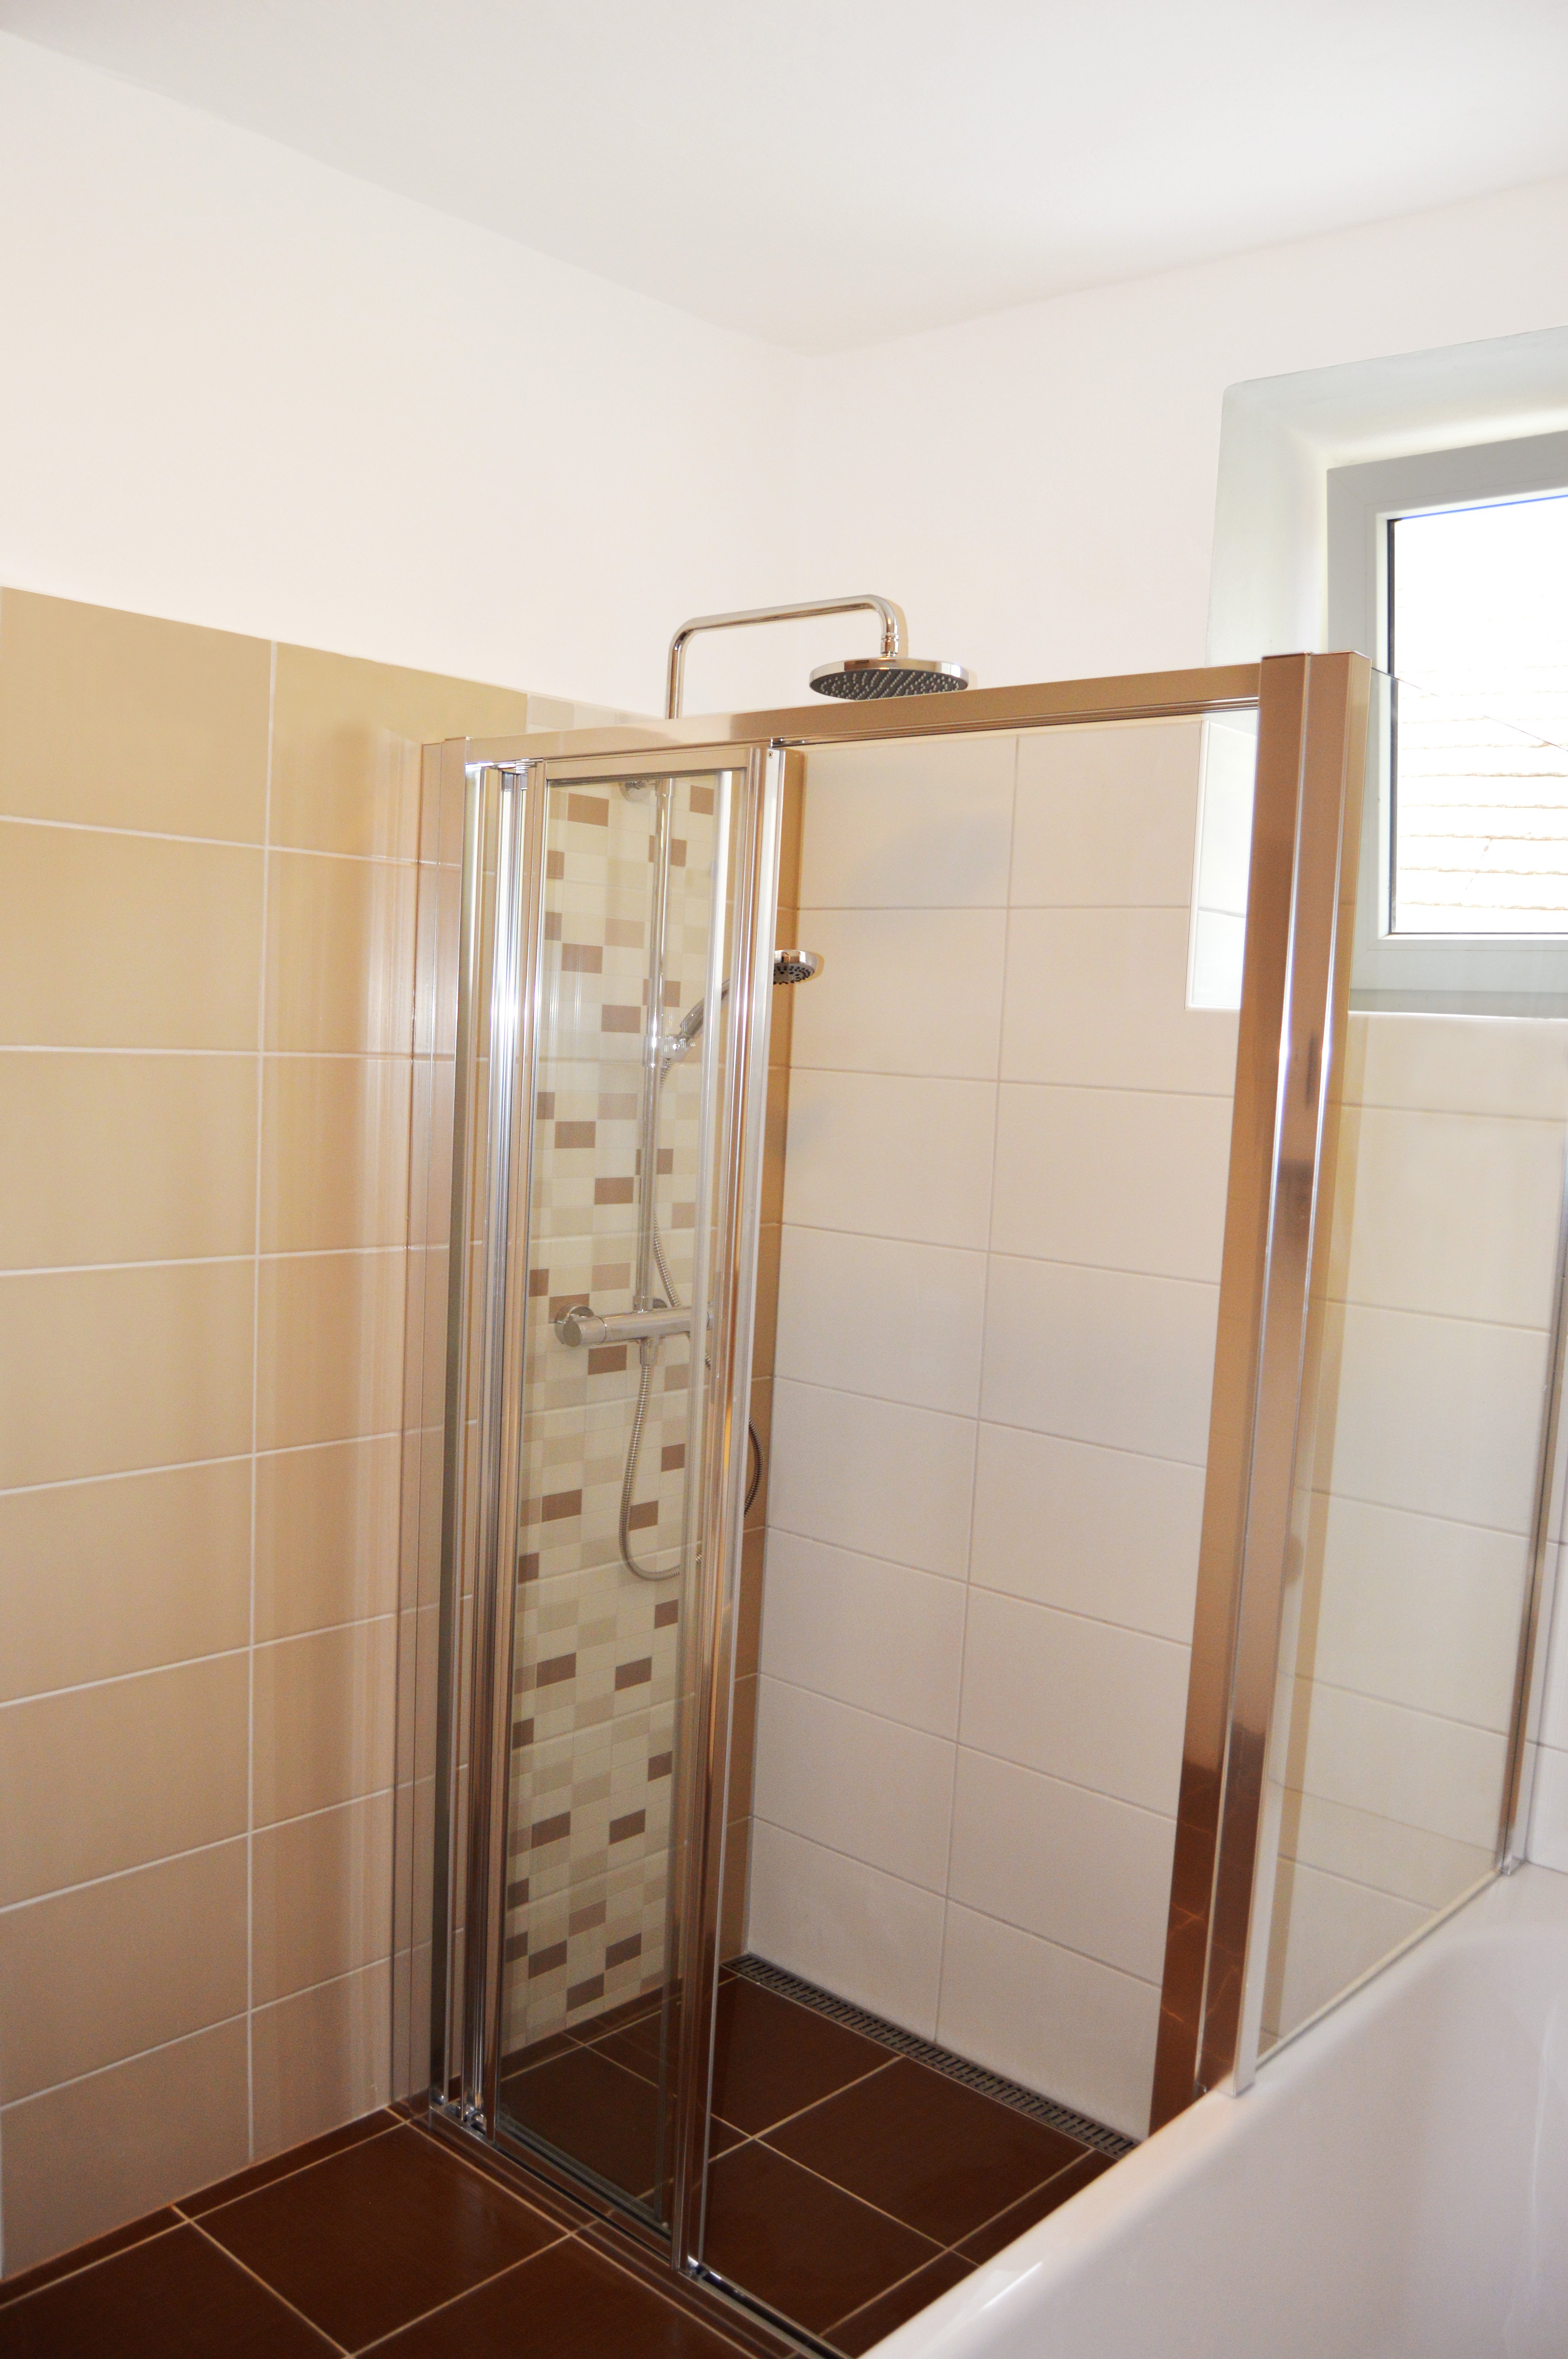 Rekonstrukce koupelny - SanSwiss (Ronal) sprchové dveře série Top Line TOPS3 - třídílné, 1200 mm, aluchrom | Koupelny-svitavy.cz